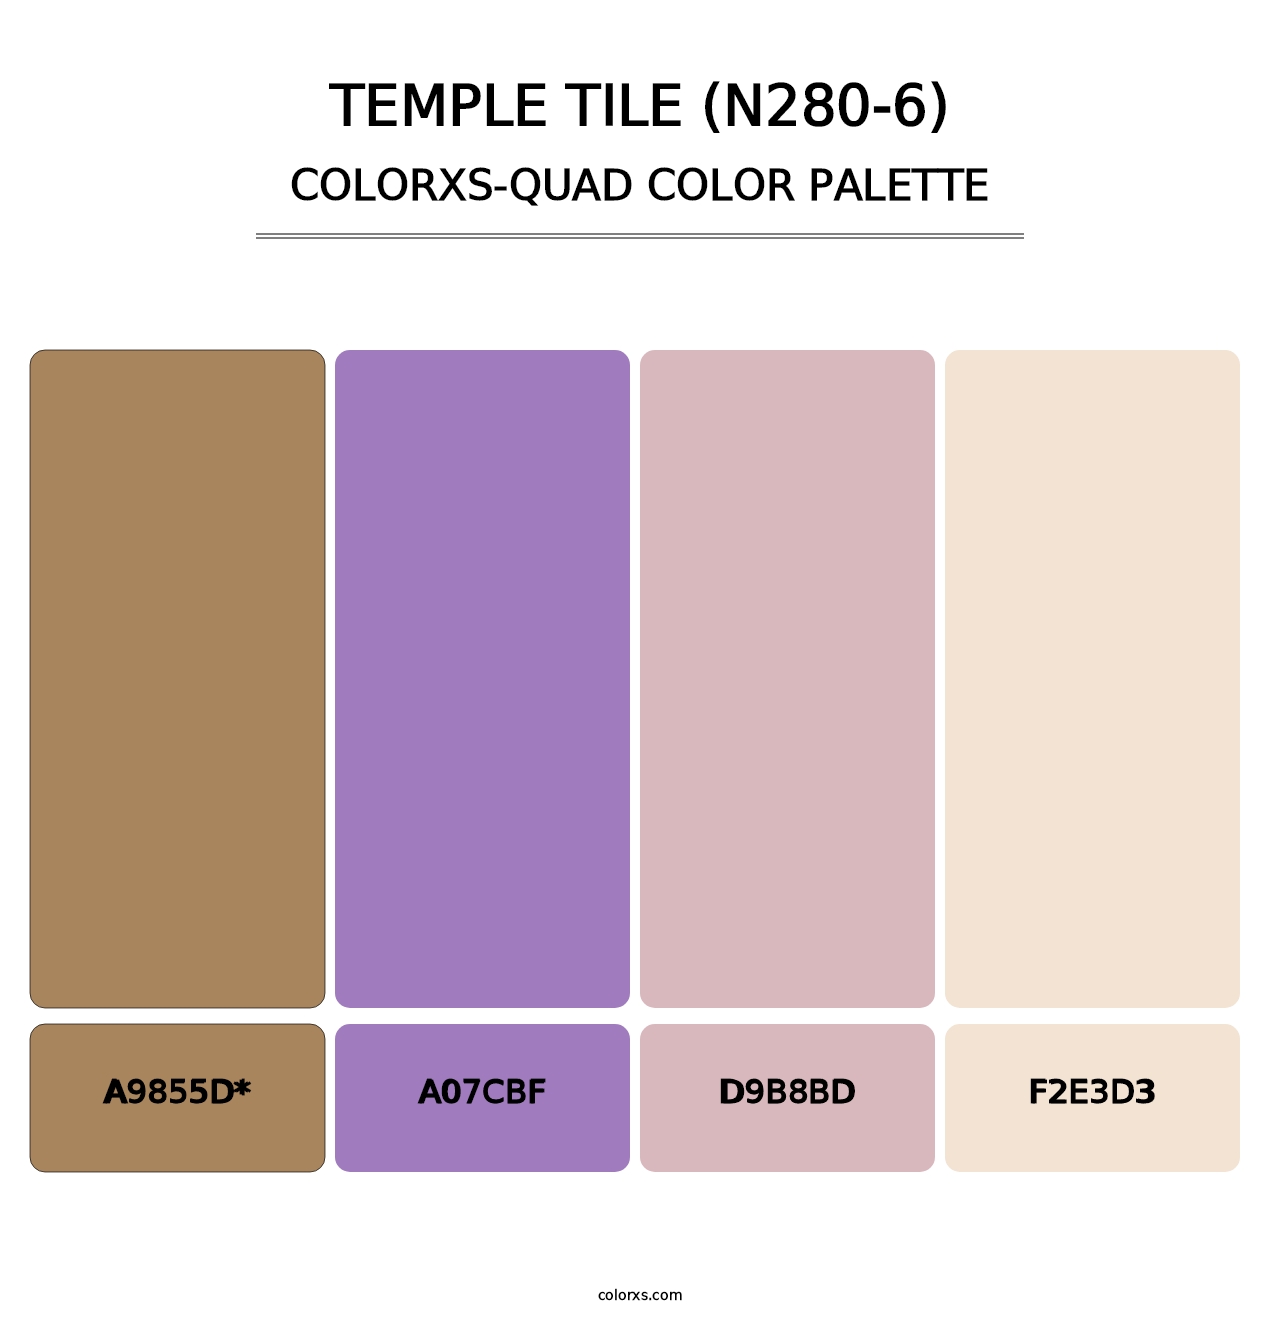 Temple Tile (N280-6) - Colorxs Quad Palette